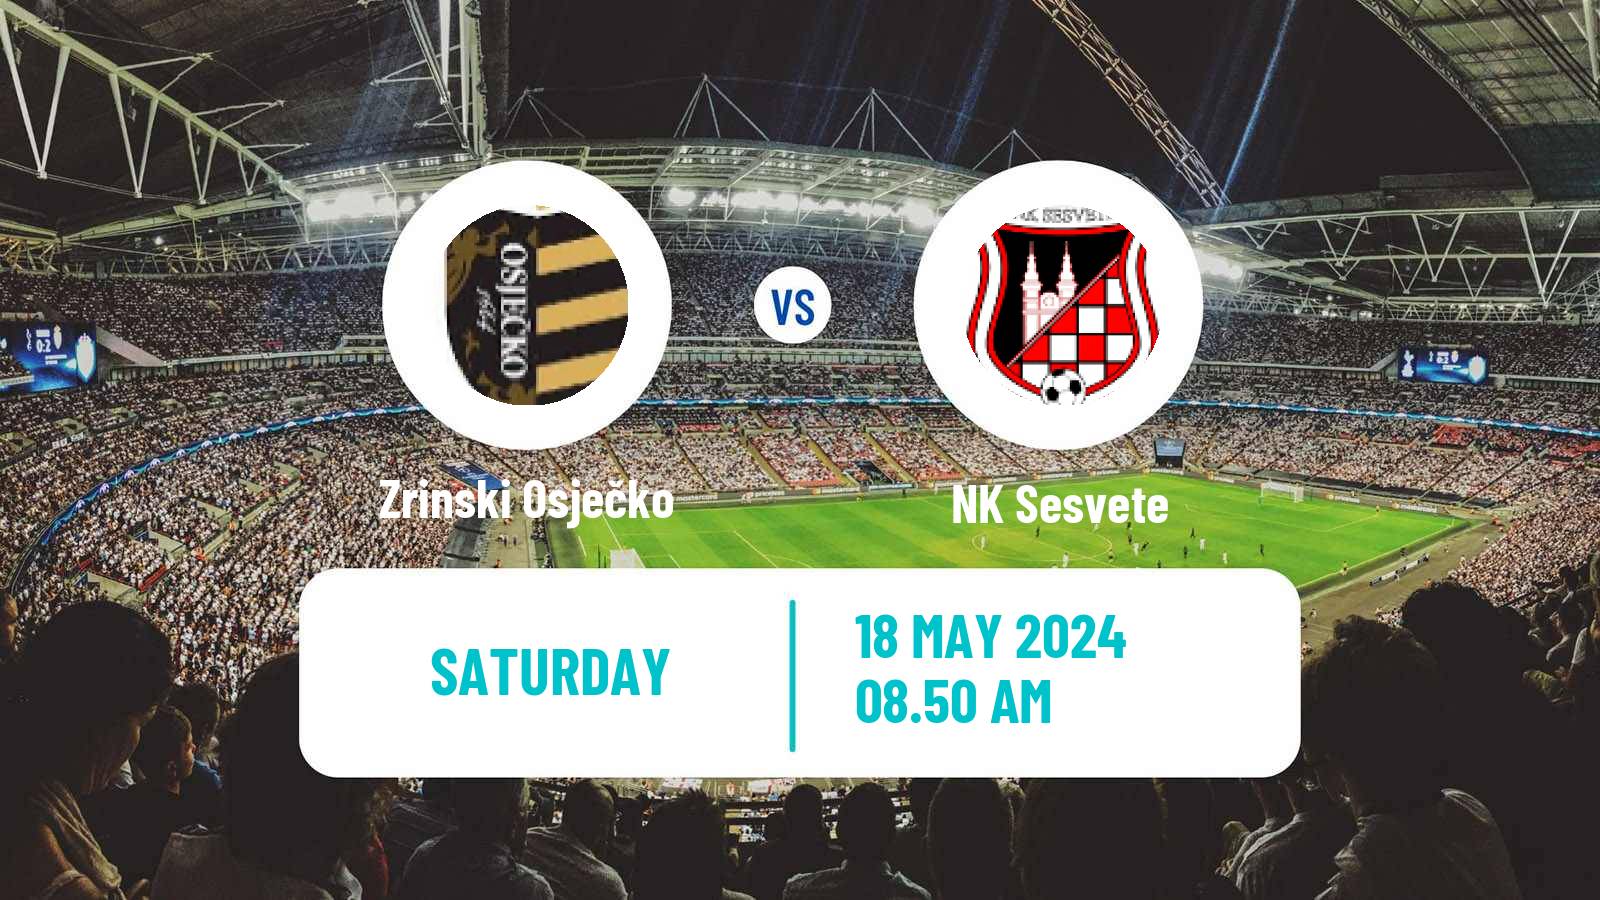 Soccer Croatian Prva NL Zrinski Osječko - Sesvete